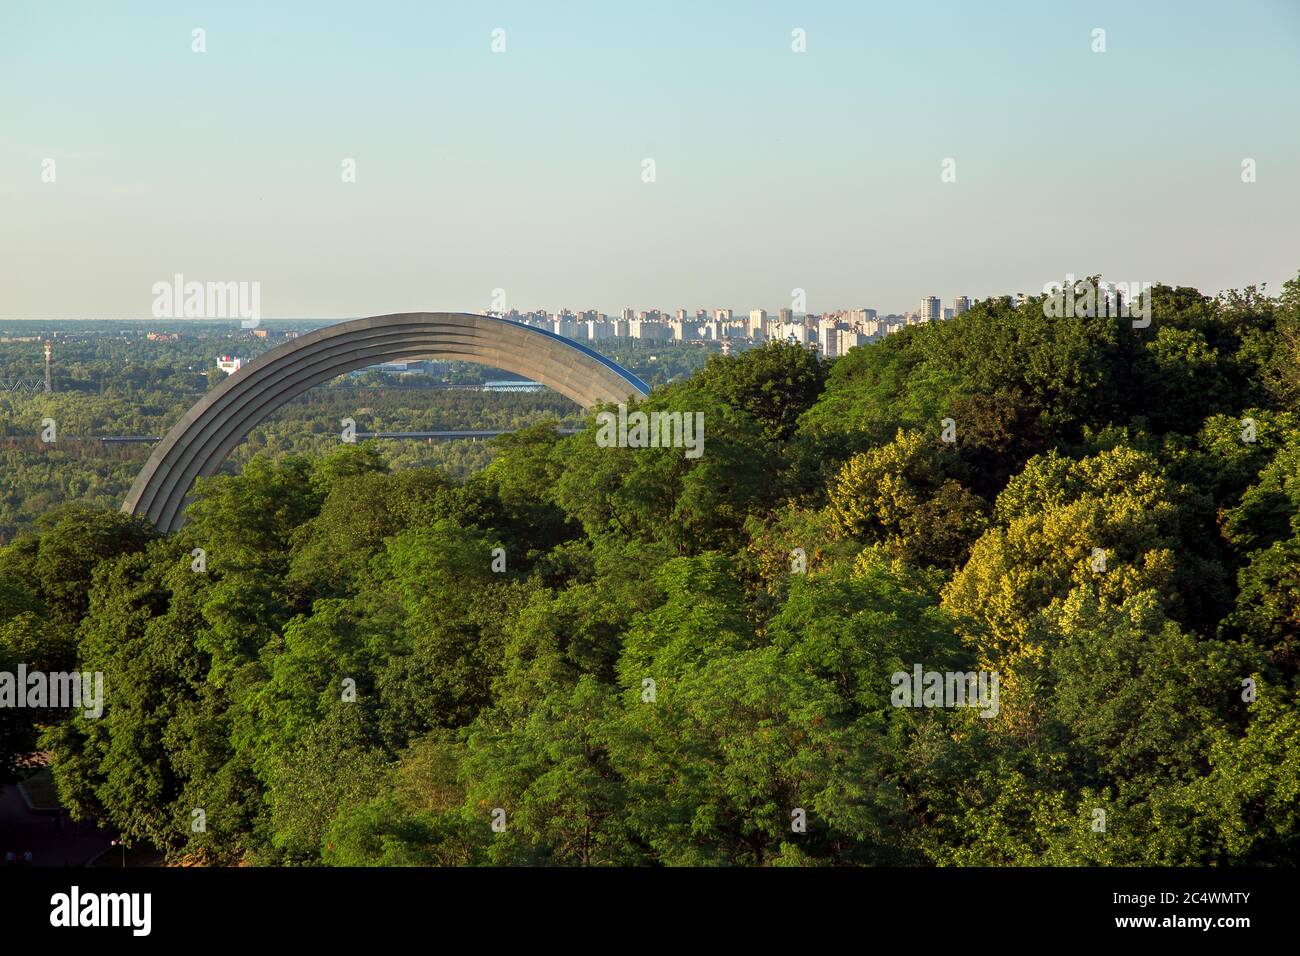 KIEV, UCRAINA - 4 giugno 2018: Monumento alla riunificazione dei popoli dell'Arcobaleno tra gli alberi verdi, vista dall'alto sul paesaggio urbano Foto Stock